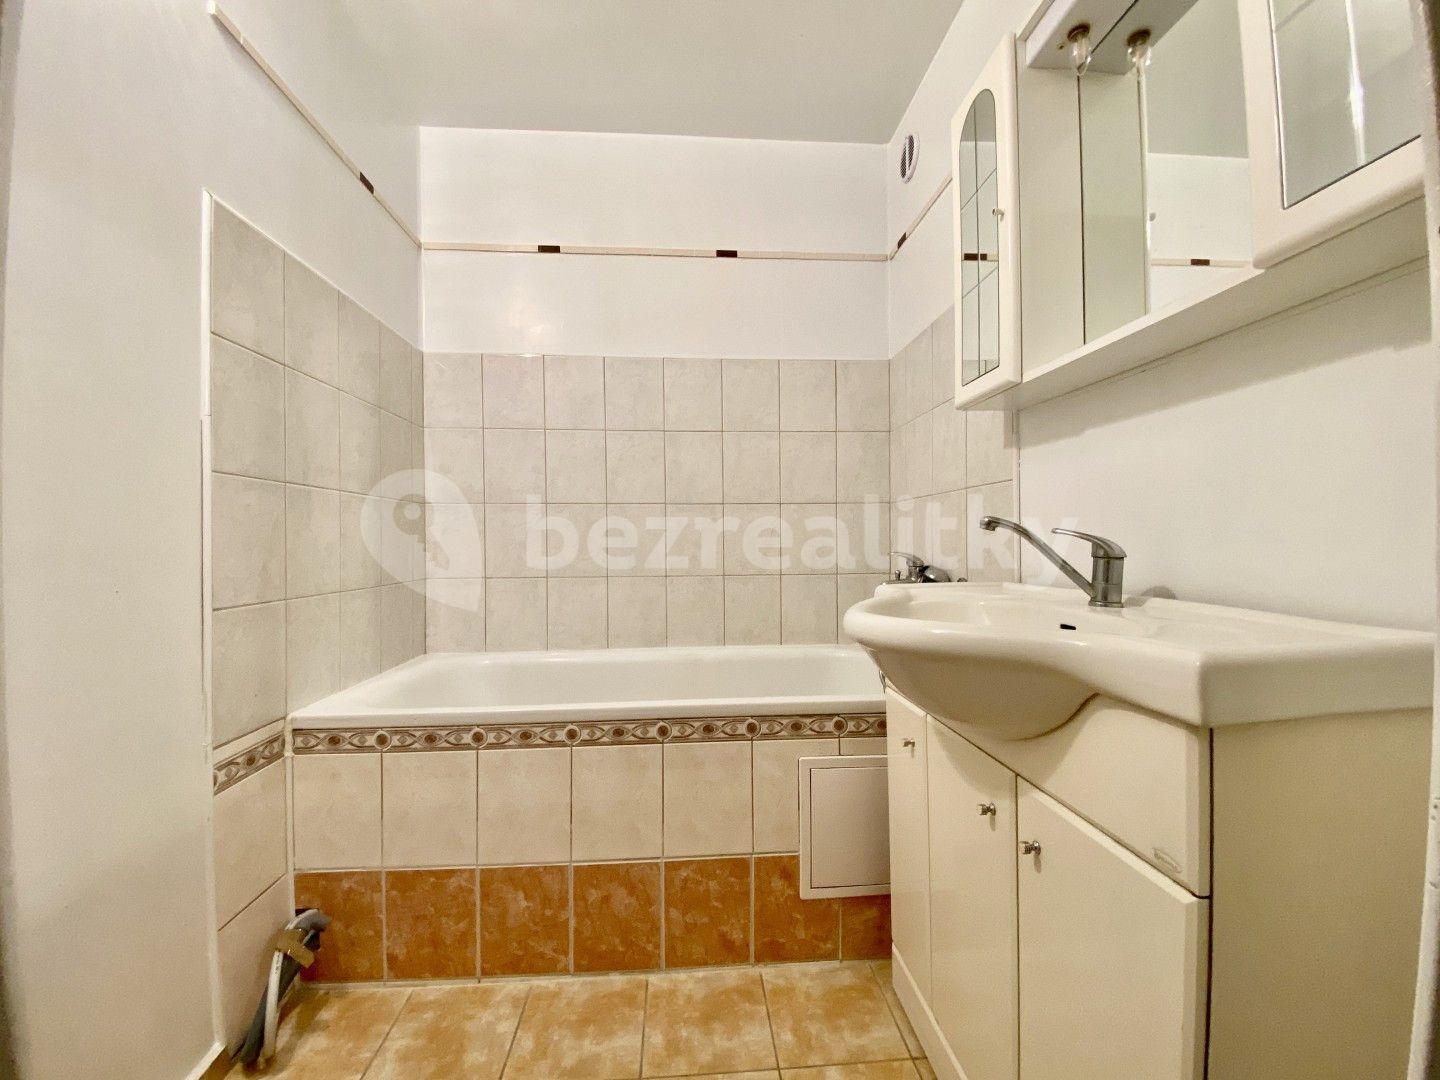 3 bedroom flat for sale, 64 m², Budapešťská, Tábor, Jihočeský Region